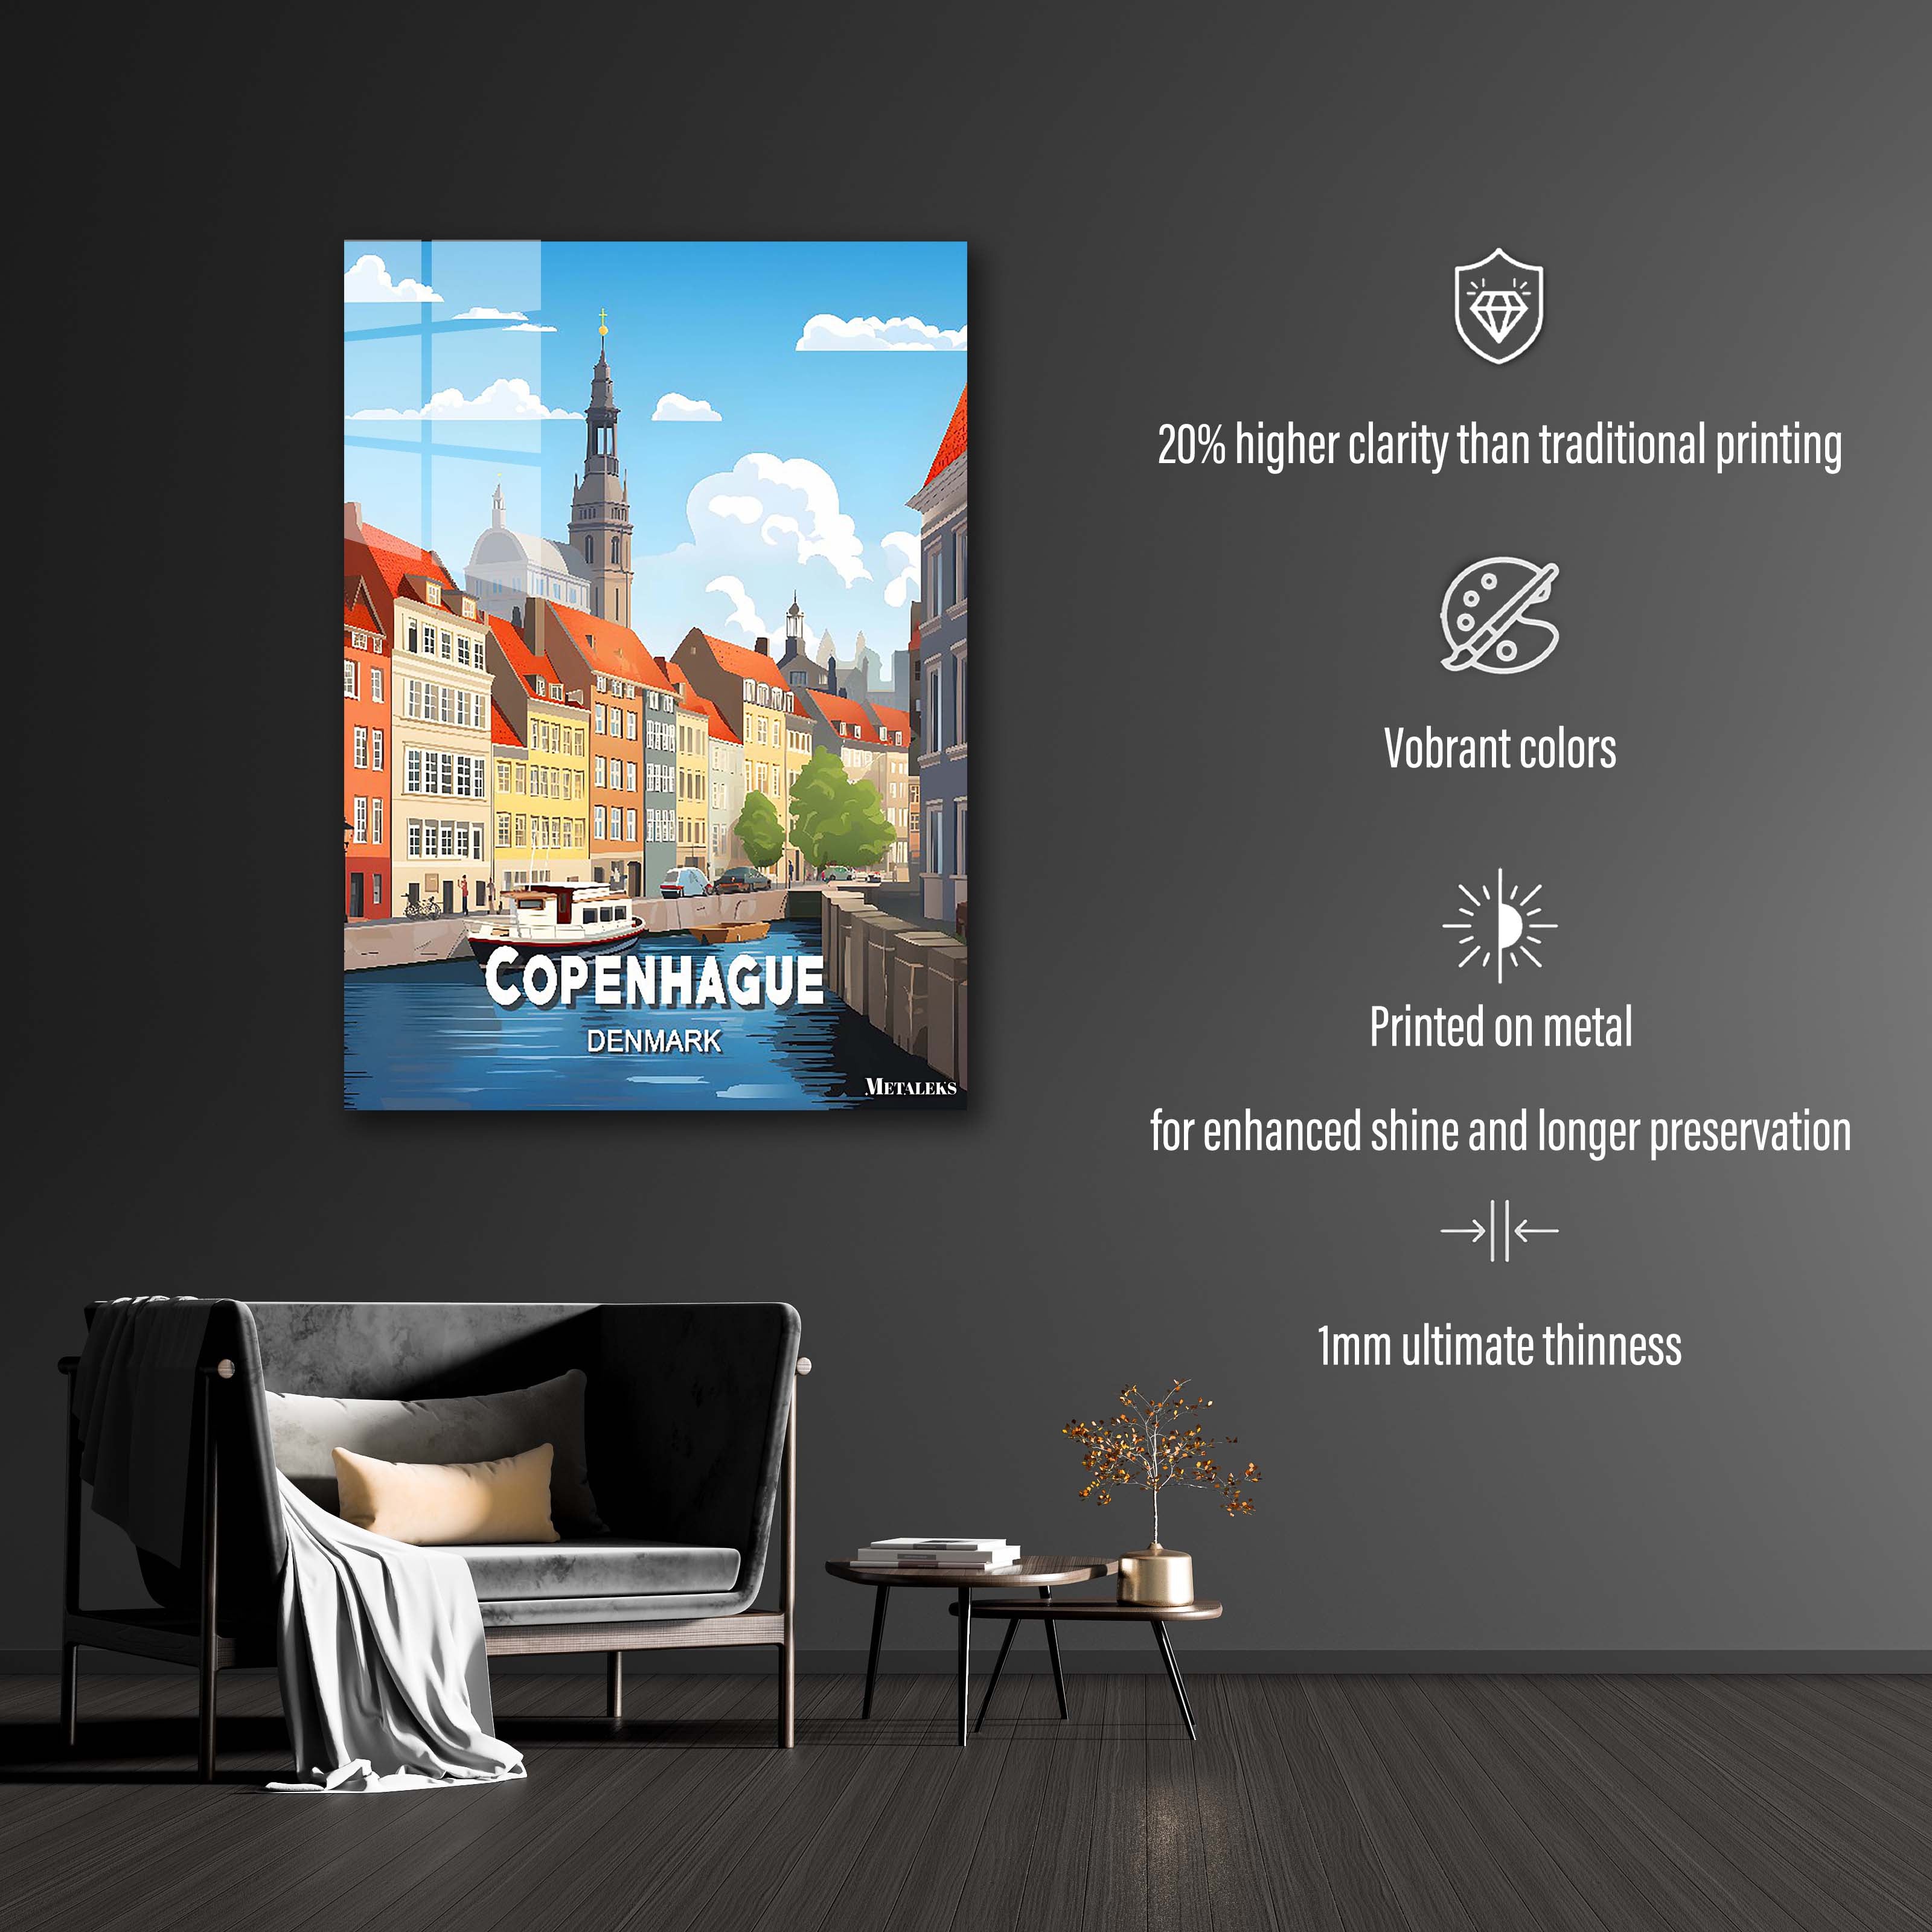 Denmark - Copenhague 3-designed by @Travel Poster AI